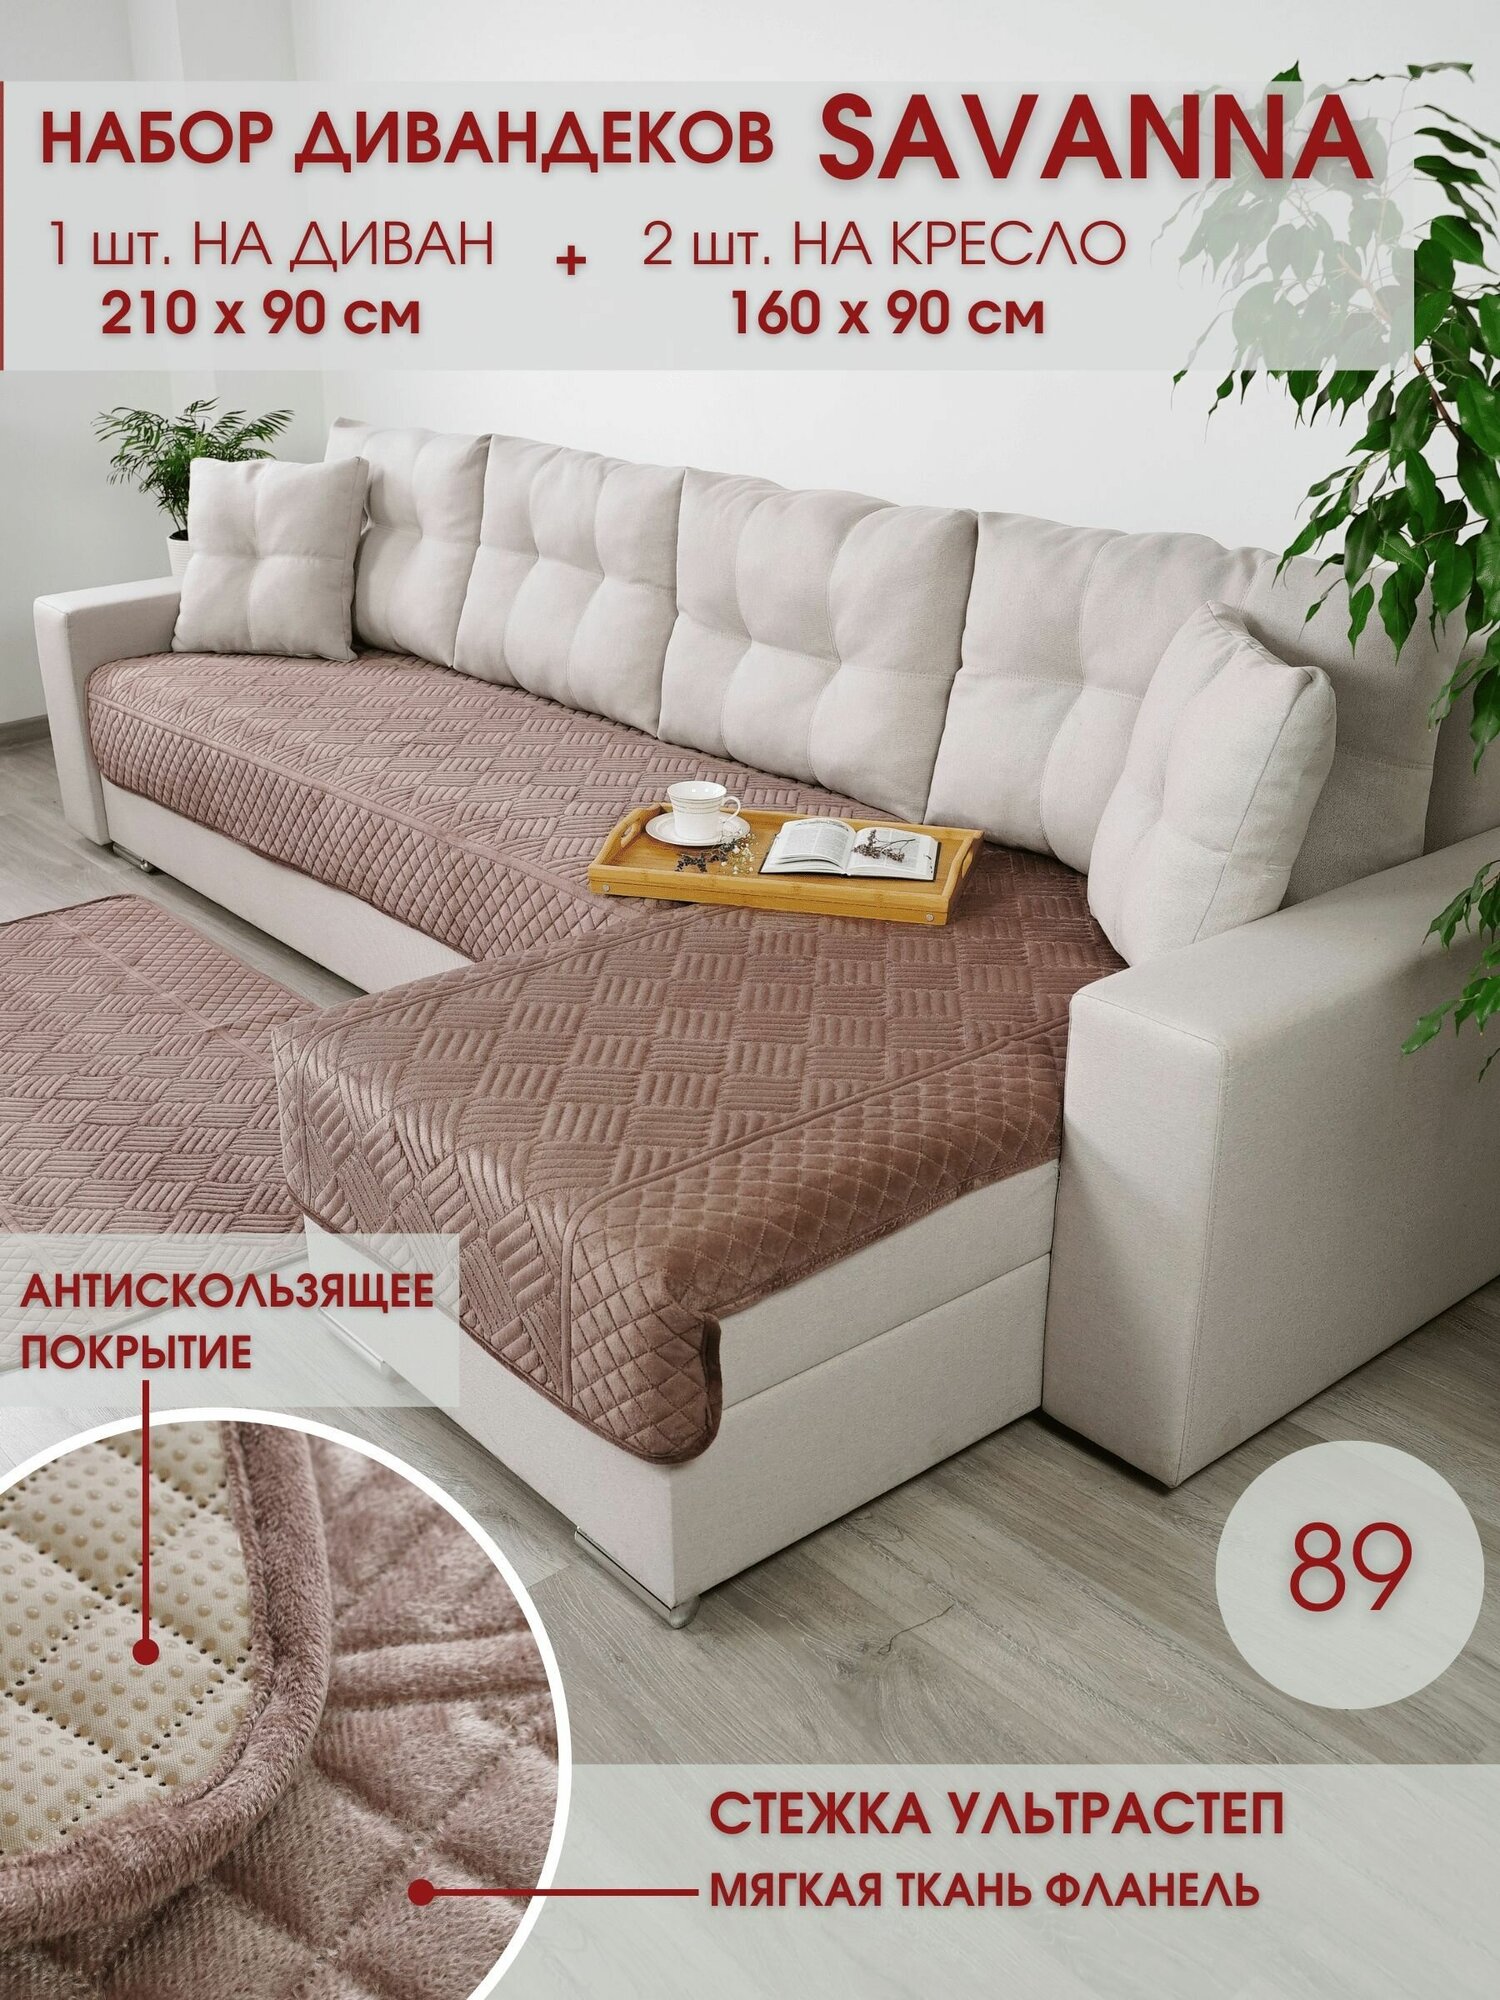 Набор накидок на диван и кресла / Набор чехлов на мебель / для дивана и кресел / Marianna SAVANNA 89